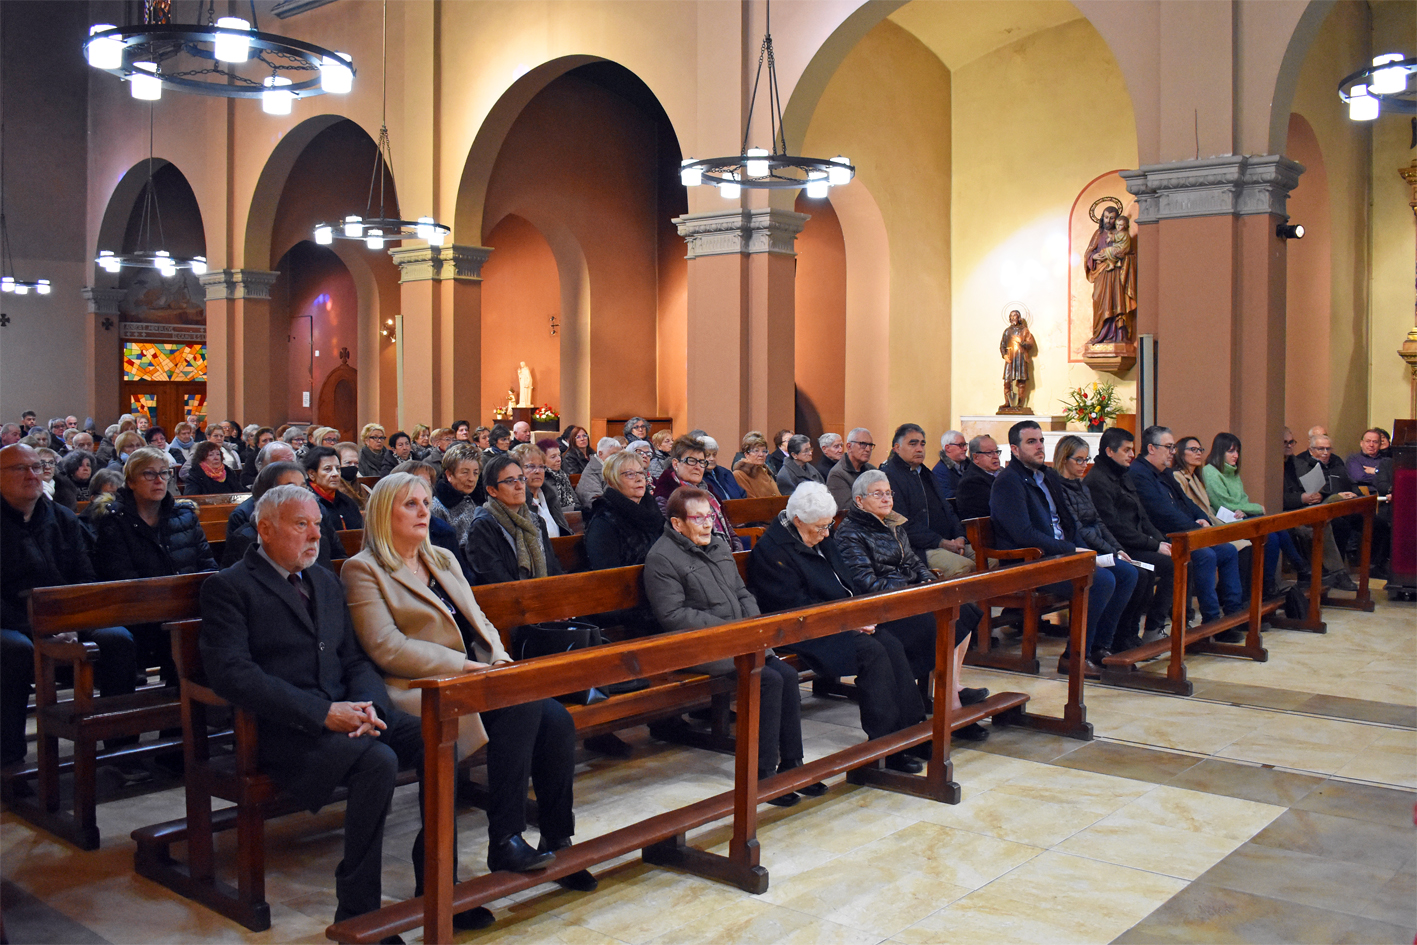 Vista parcial de les persones assistents a la missa de renovació del Vot de Poble a Sant Sebastià.